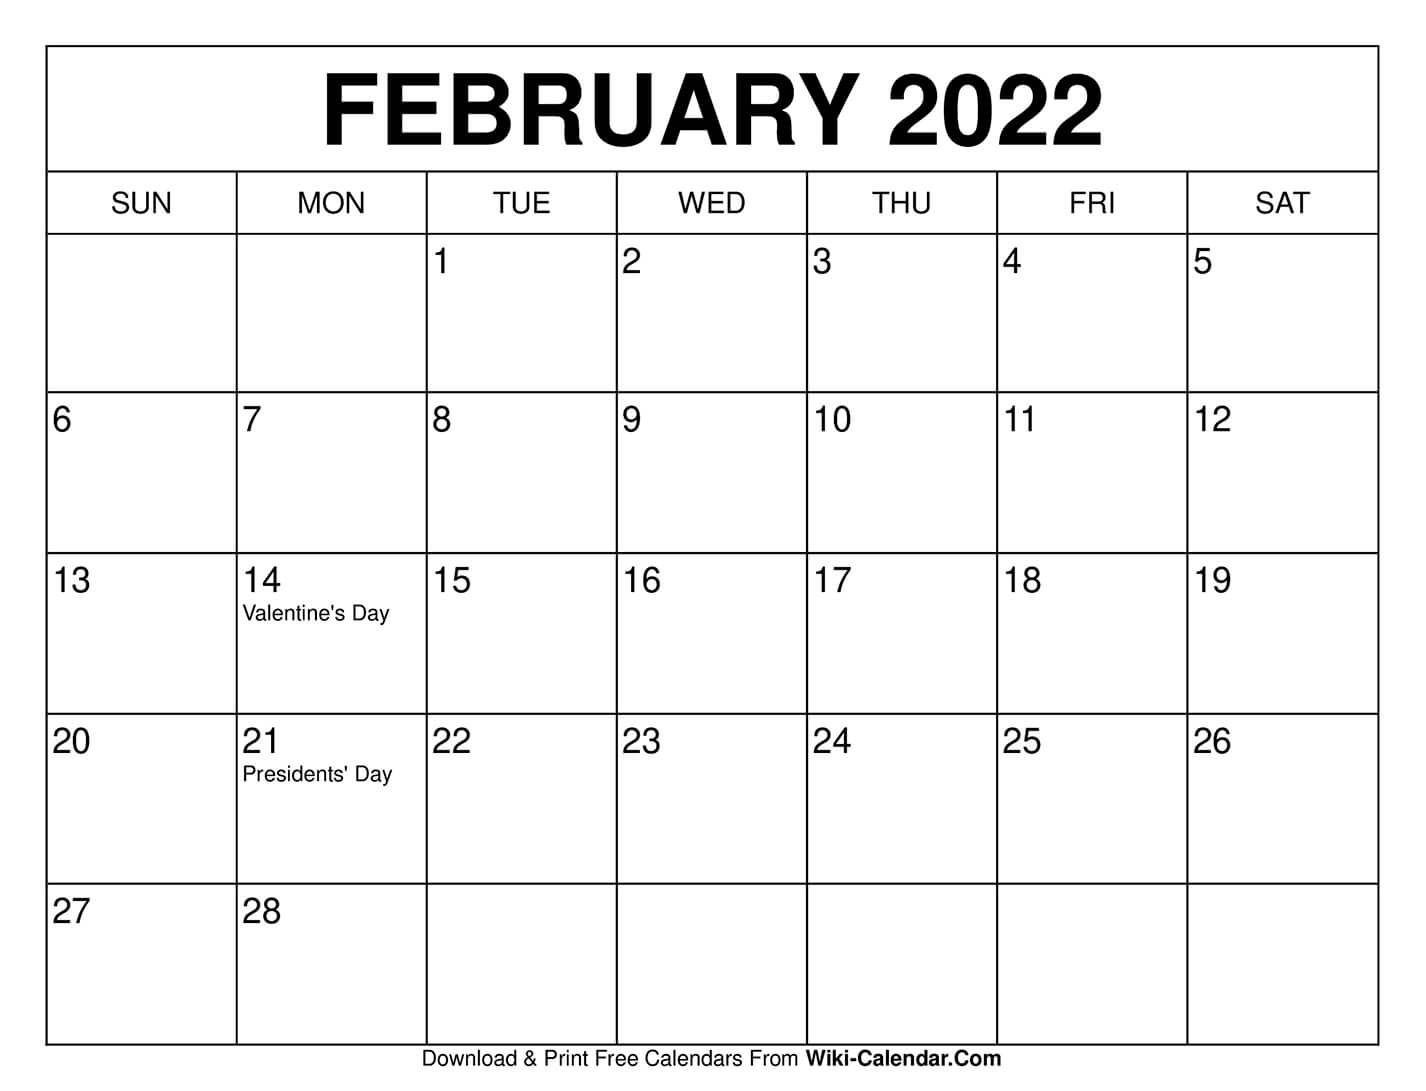 February 2022 Free Printable Calendar Calendar 2022